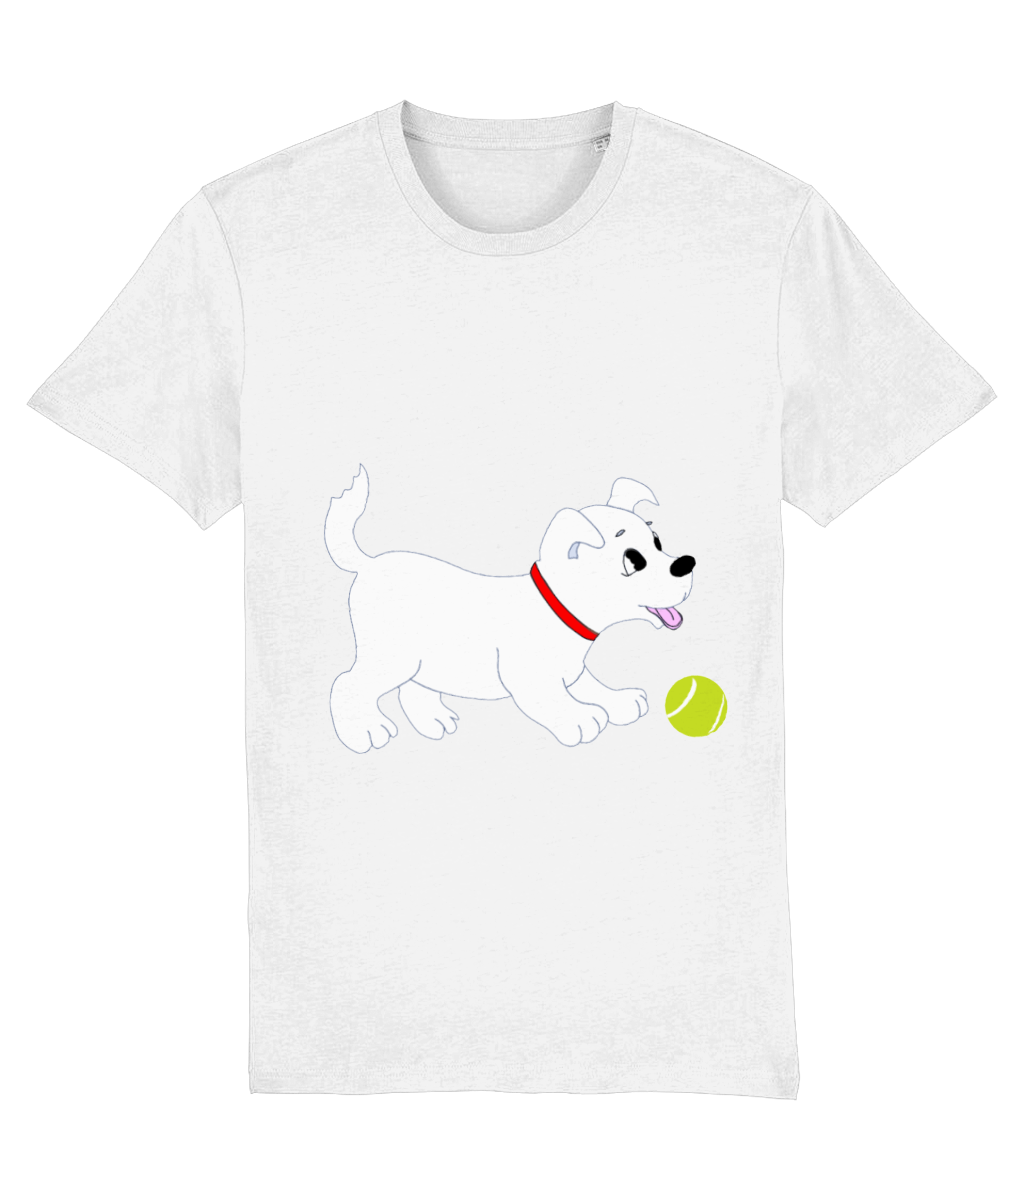 Dog Chasing Tennis Ball T-Shirt